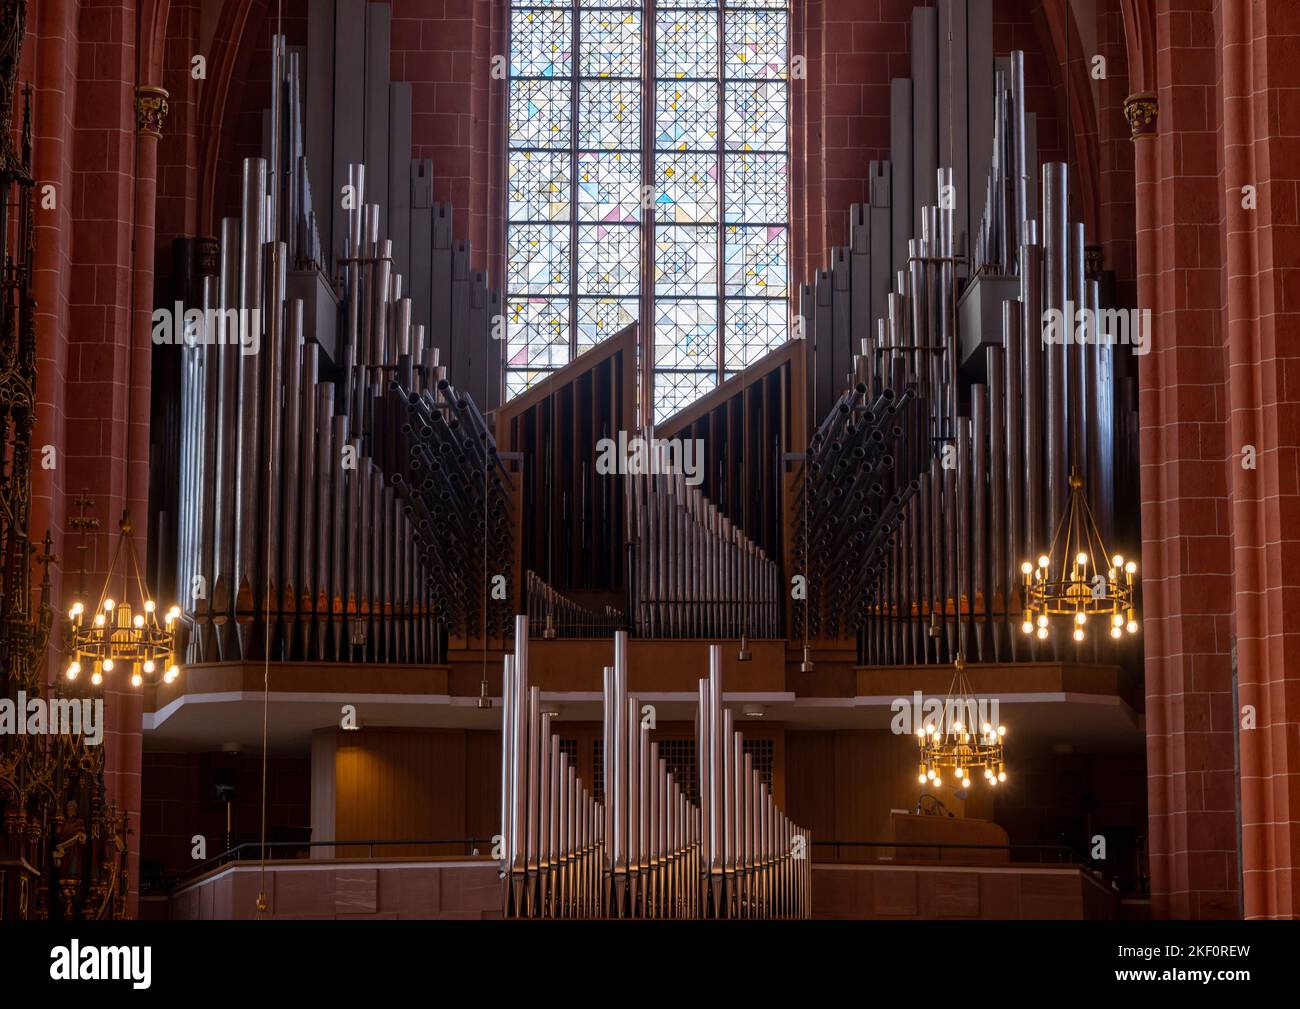 1957 orgue principal construit par Klais (D, Bonn), Kaiserdom Sankt Bartholomäus, Cathédrale impériale de Saint Bartholomew, Francfort, Allemagne Banque D'Images